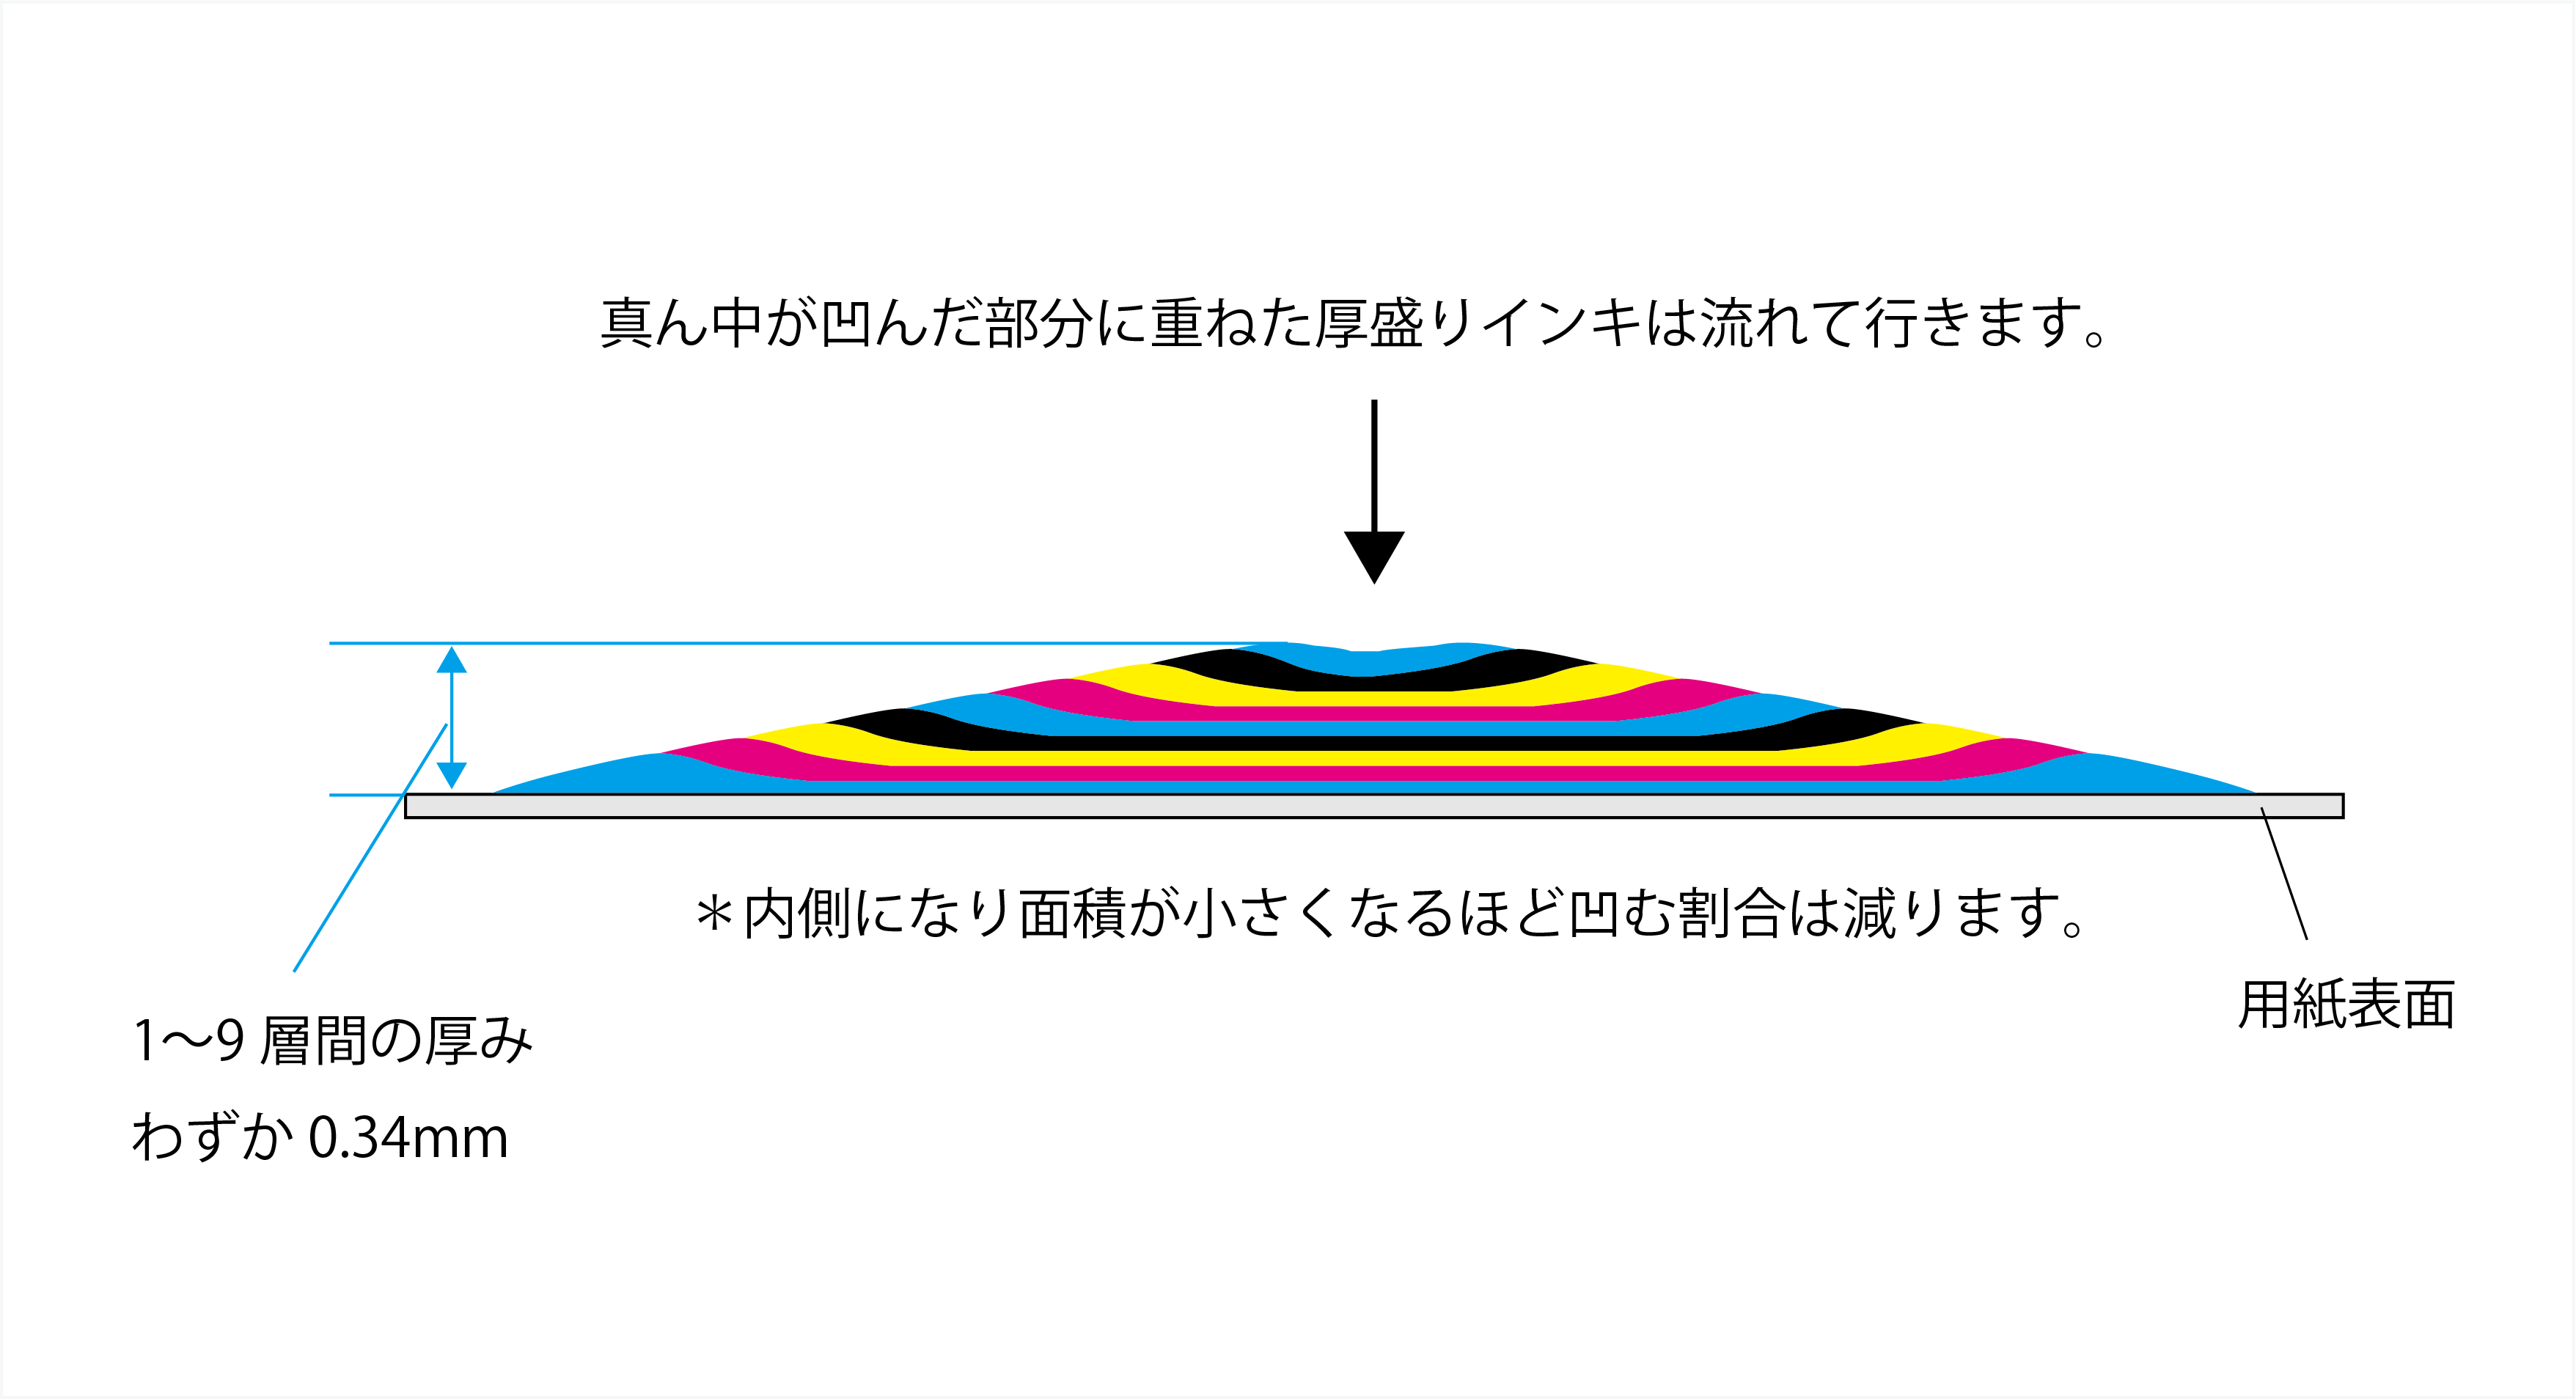 【図2】厚盛りを重ねたインクを横から見たイメージ（9層印刷時）